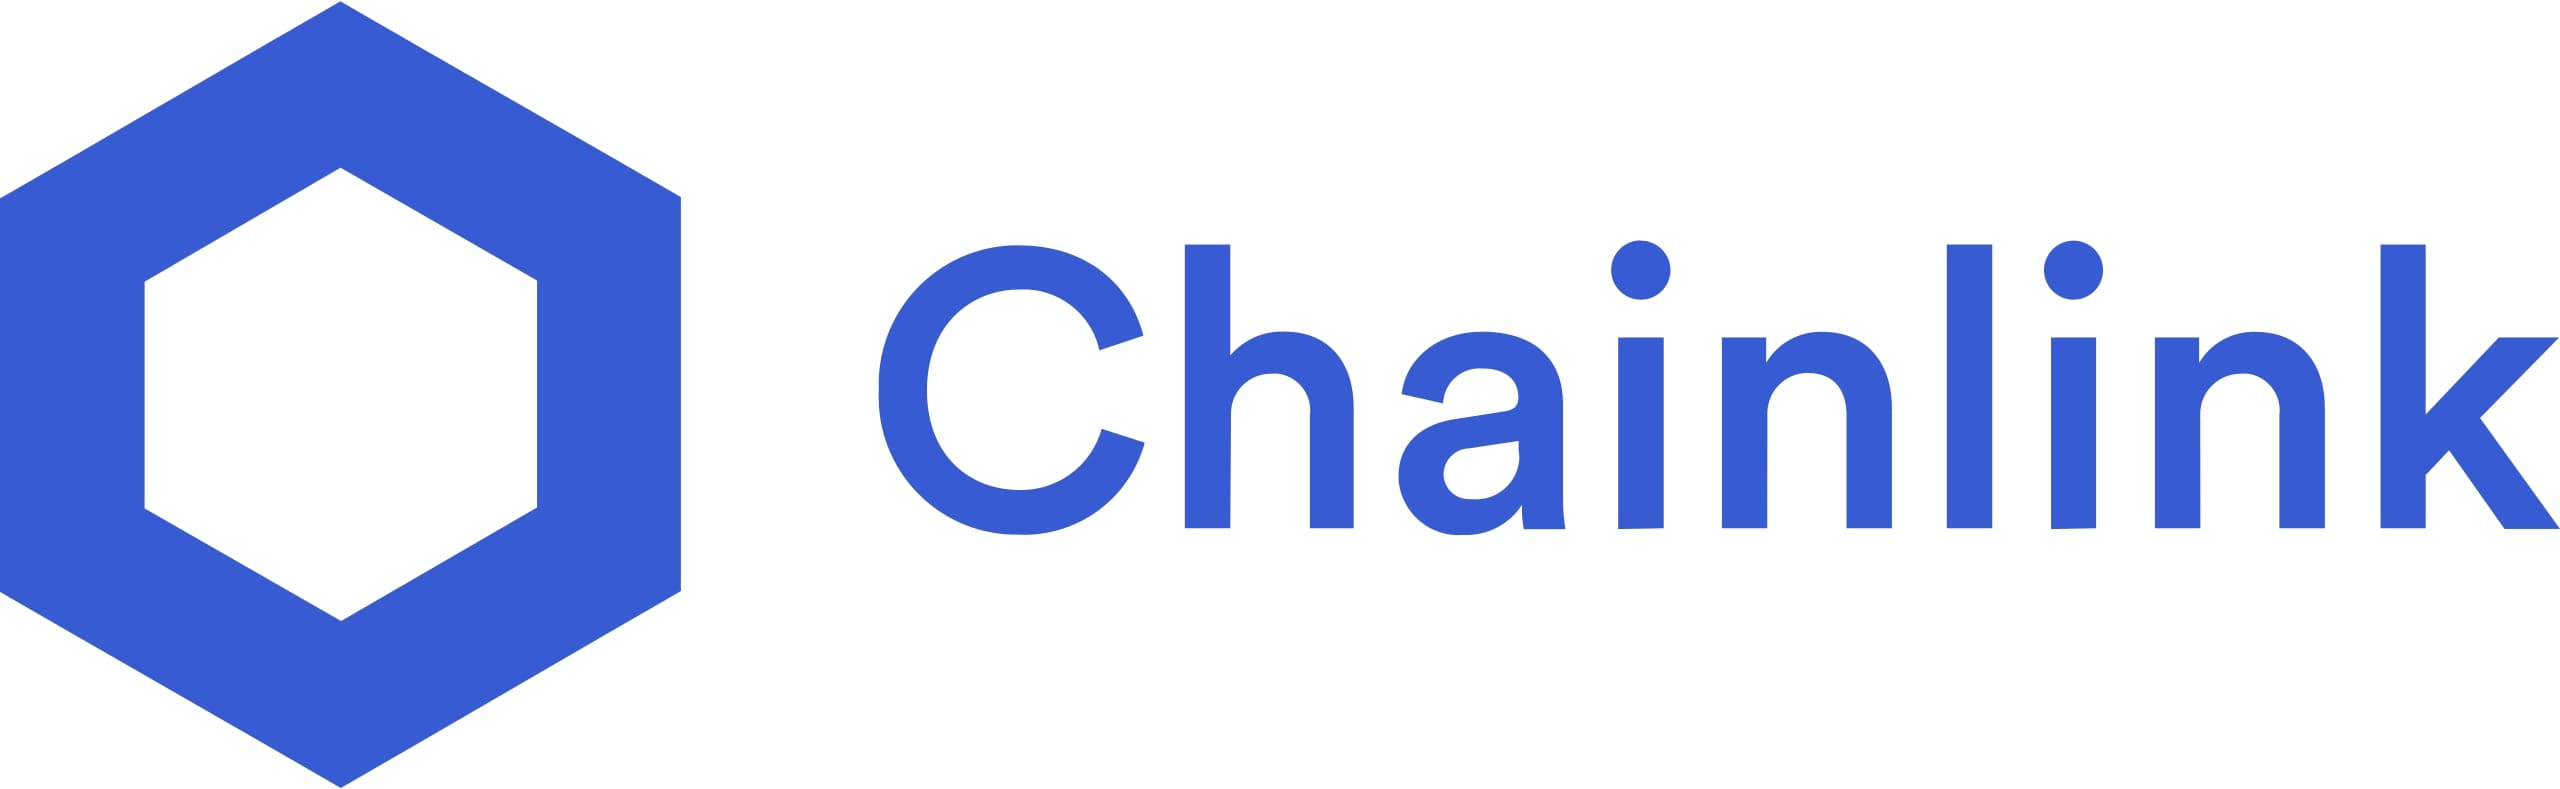 Innan vi tittar på olika alternativa sätt att investera i Chainlink med en börshandlad produkt så är det bra att veta vad Chainlink är. Chainlink (LINK) är en kryptovaluta och teknologiplattform som gör det möjligt för icke-blockkedjeföretag att säkert ansluta till blockchain-plattformar. Chainlink är mellanprogram som kopplar ihop blockkedjebaserade smarta kontrakt med extern data, såsom baseballpoäng eller aktiekurser. Chainlinks LINK-valuta betalar Chainlink-nätoperatörer och ställer säkerheter för nätverkets smarta kontraktsavtal.